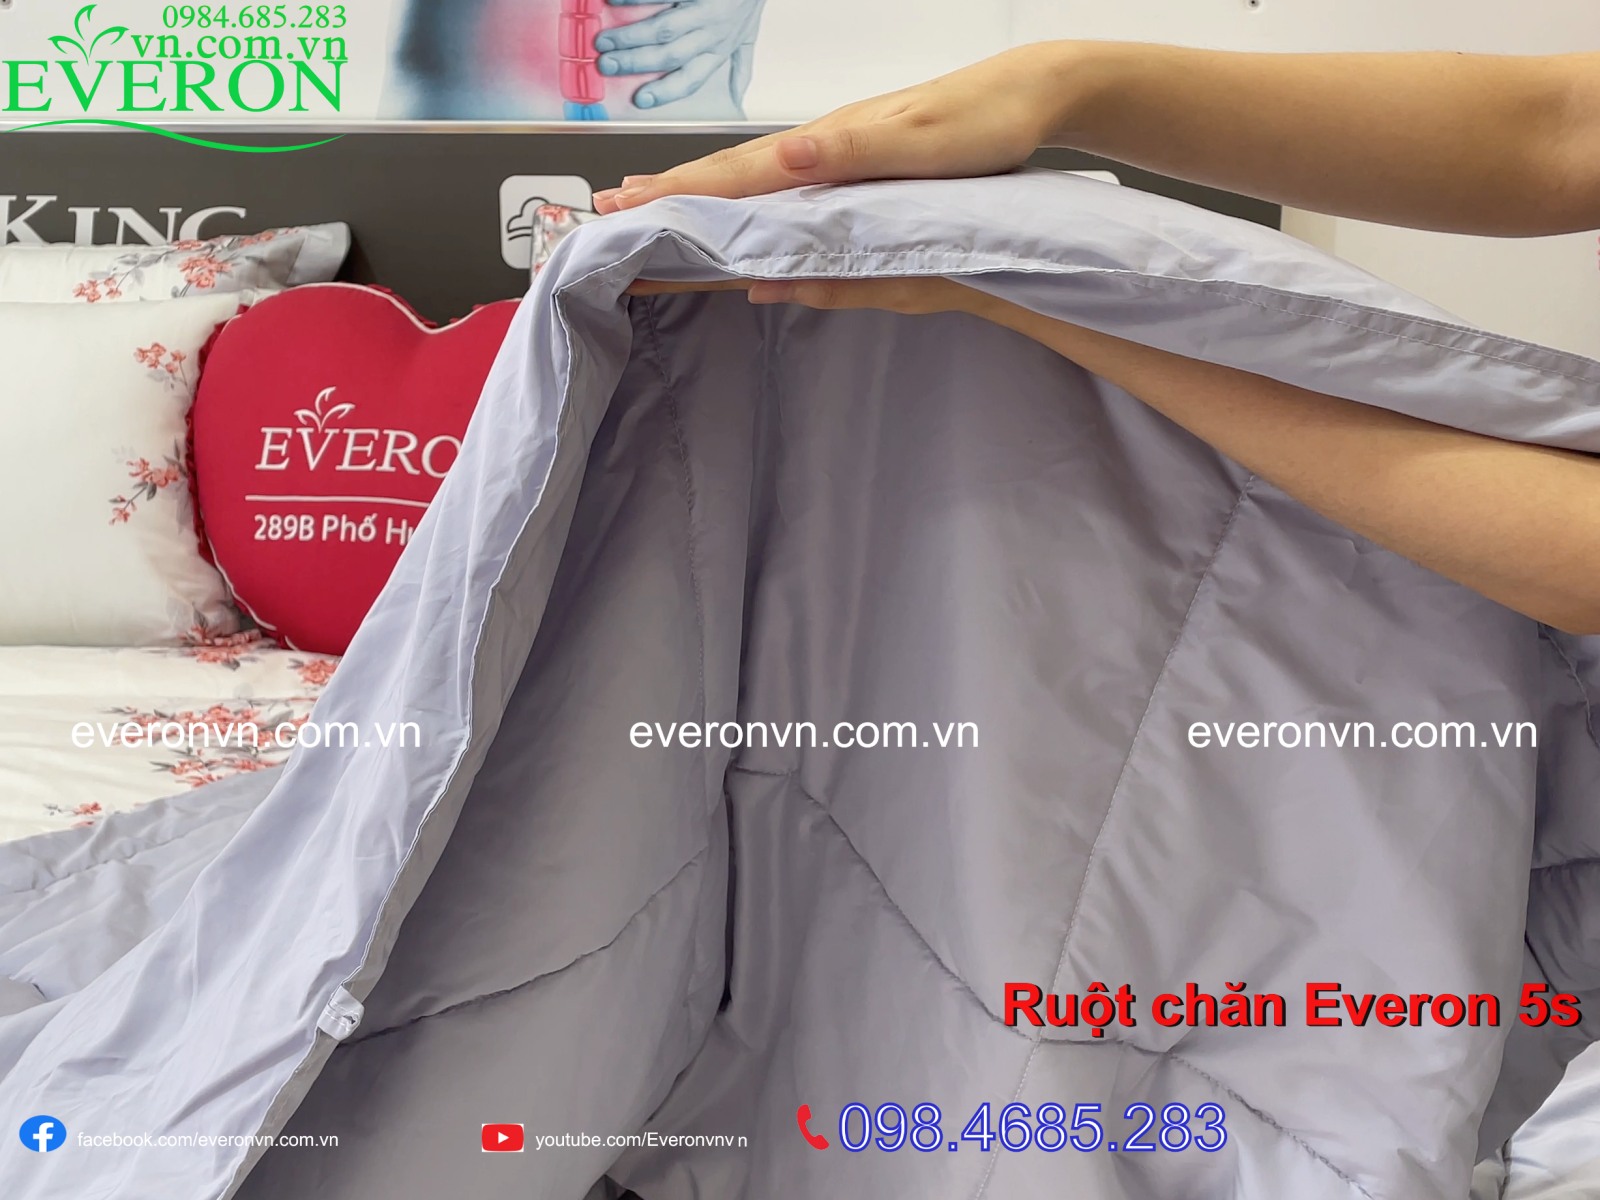 Ruột Chăn Everon 5S sử dụng chất liệu bông 100% Micro polyester